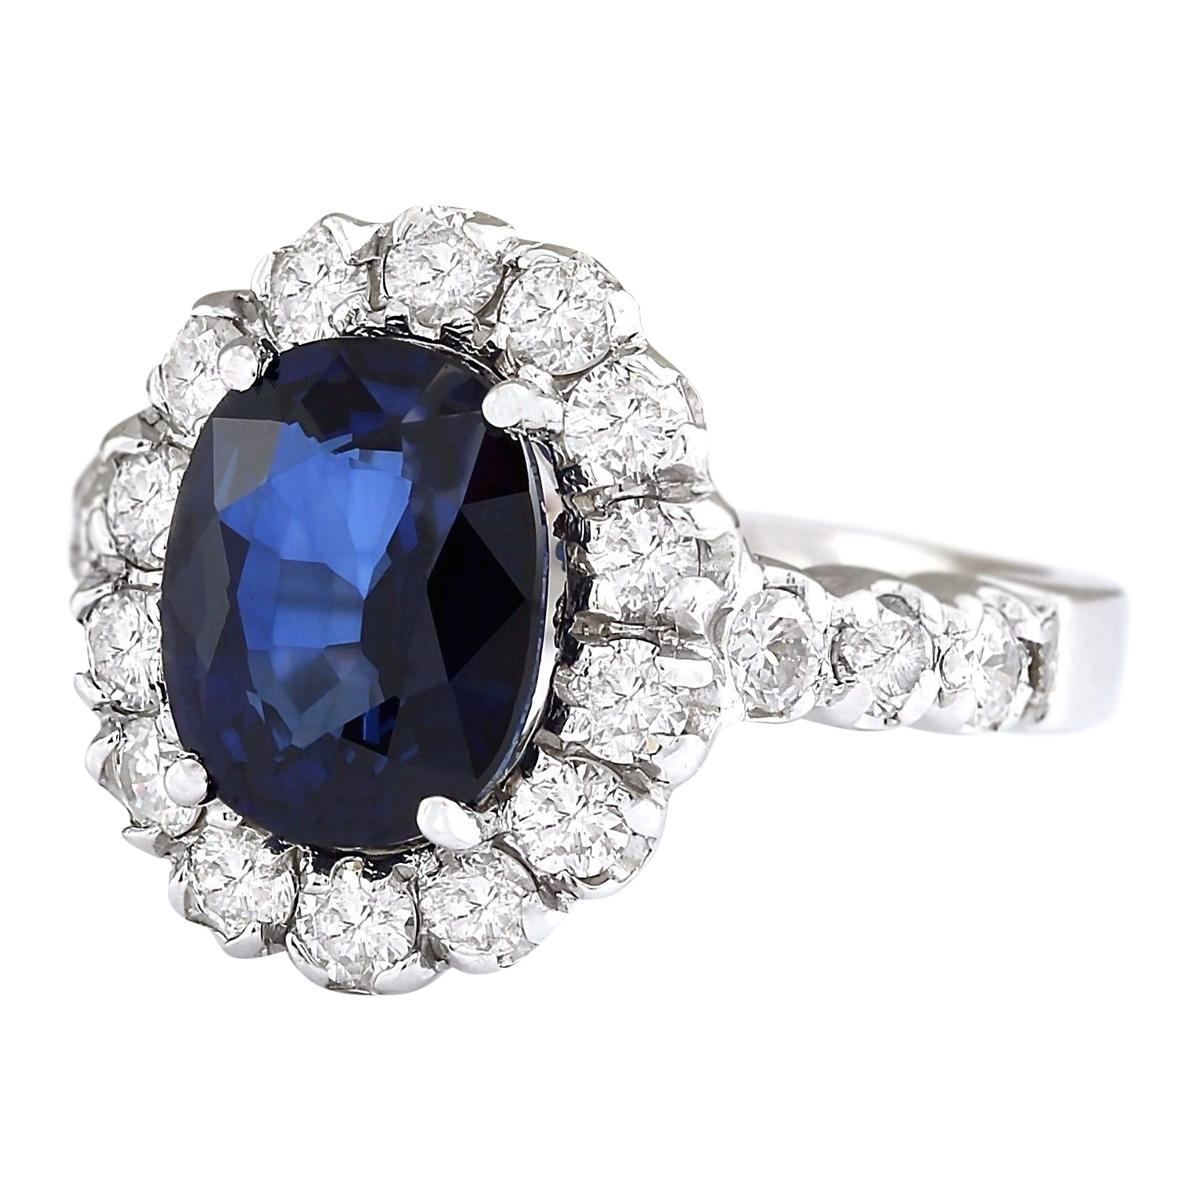 3.35 Carat Natural Sapphire 14 Karat White Gold Diamond Ring
Stamped: 18K White Gold
Total Ring Weight: 5.7 Grams
Total Natural Sapphire Weight is 2.55 Carat (Measures: 9.00x7.00 mm)
Color: Blue
Total Natural Diamond Weight is 0.80 Carat
Color: F-G,